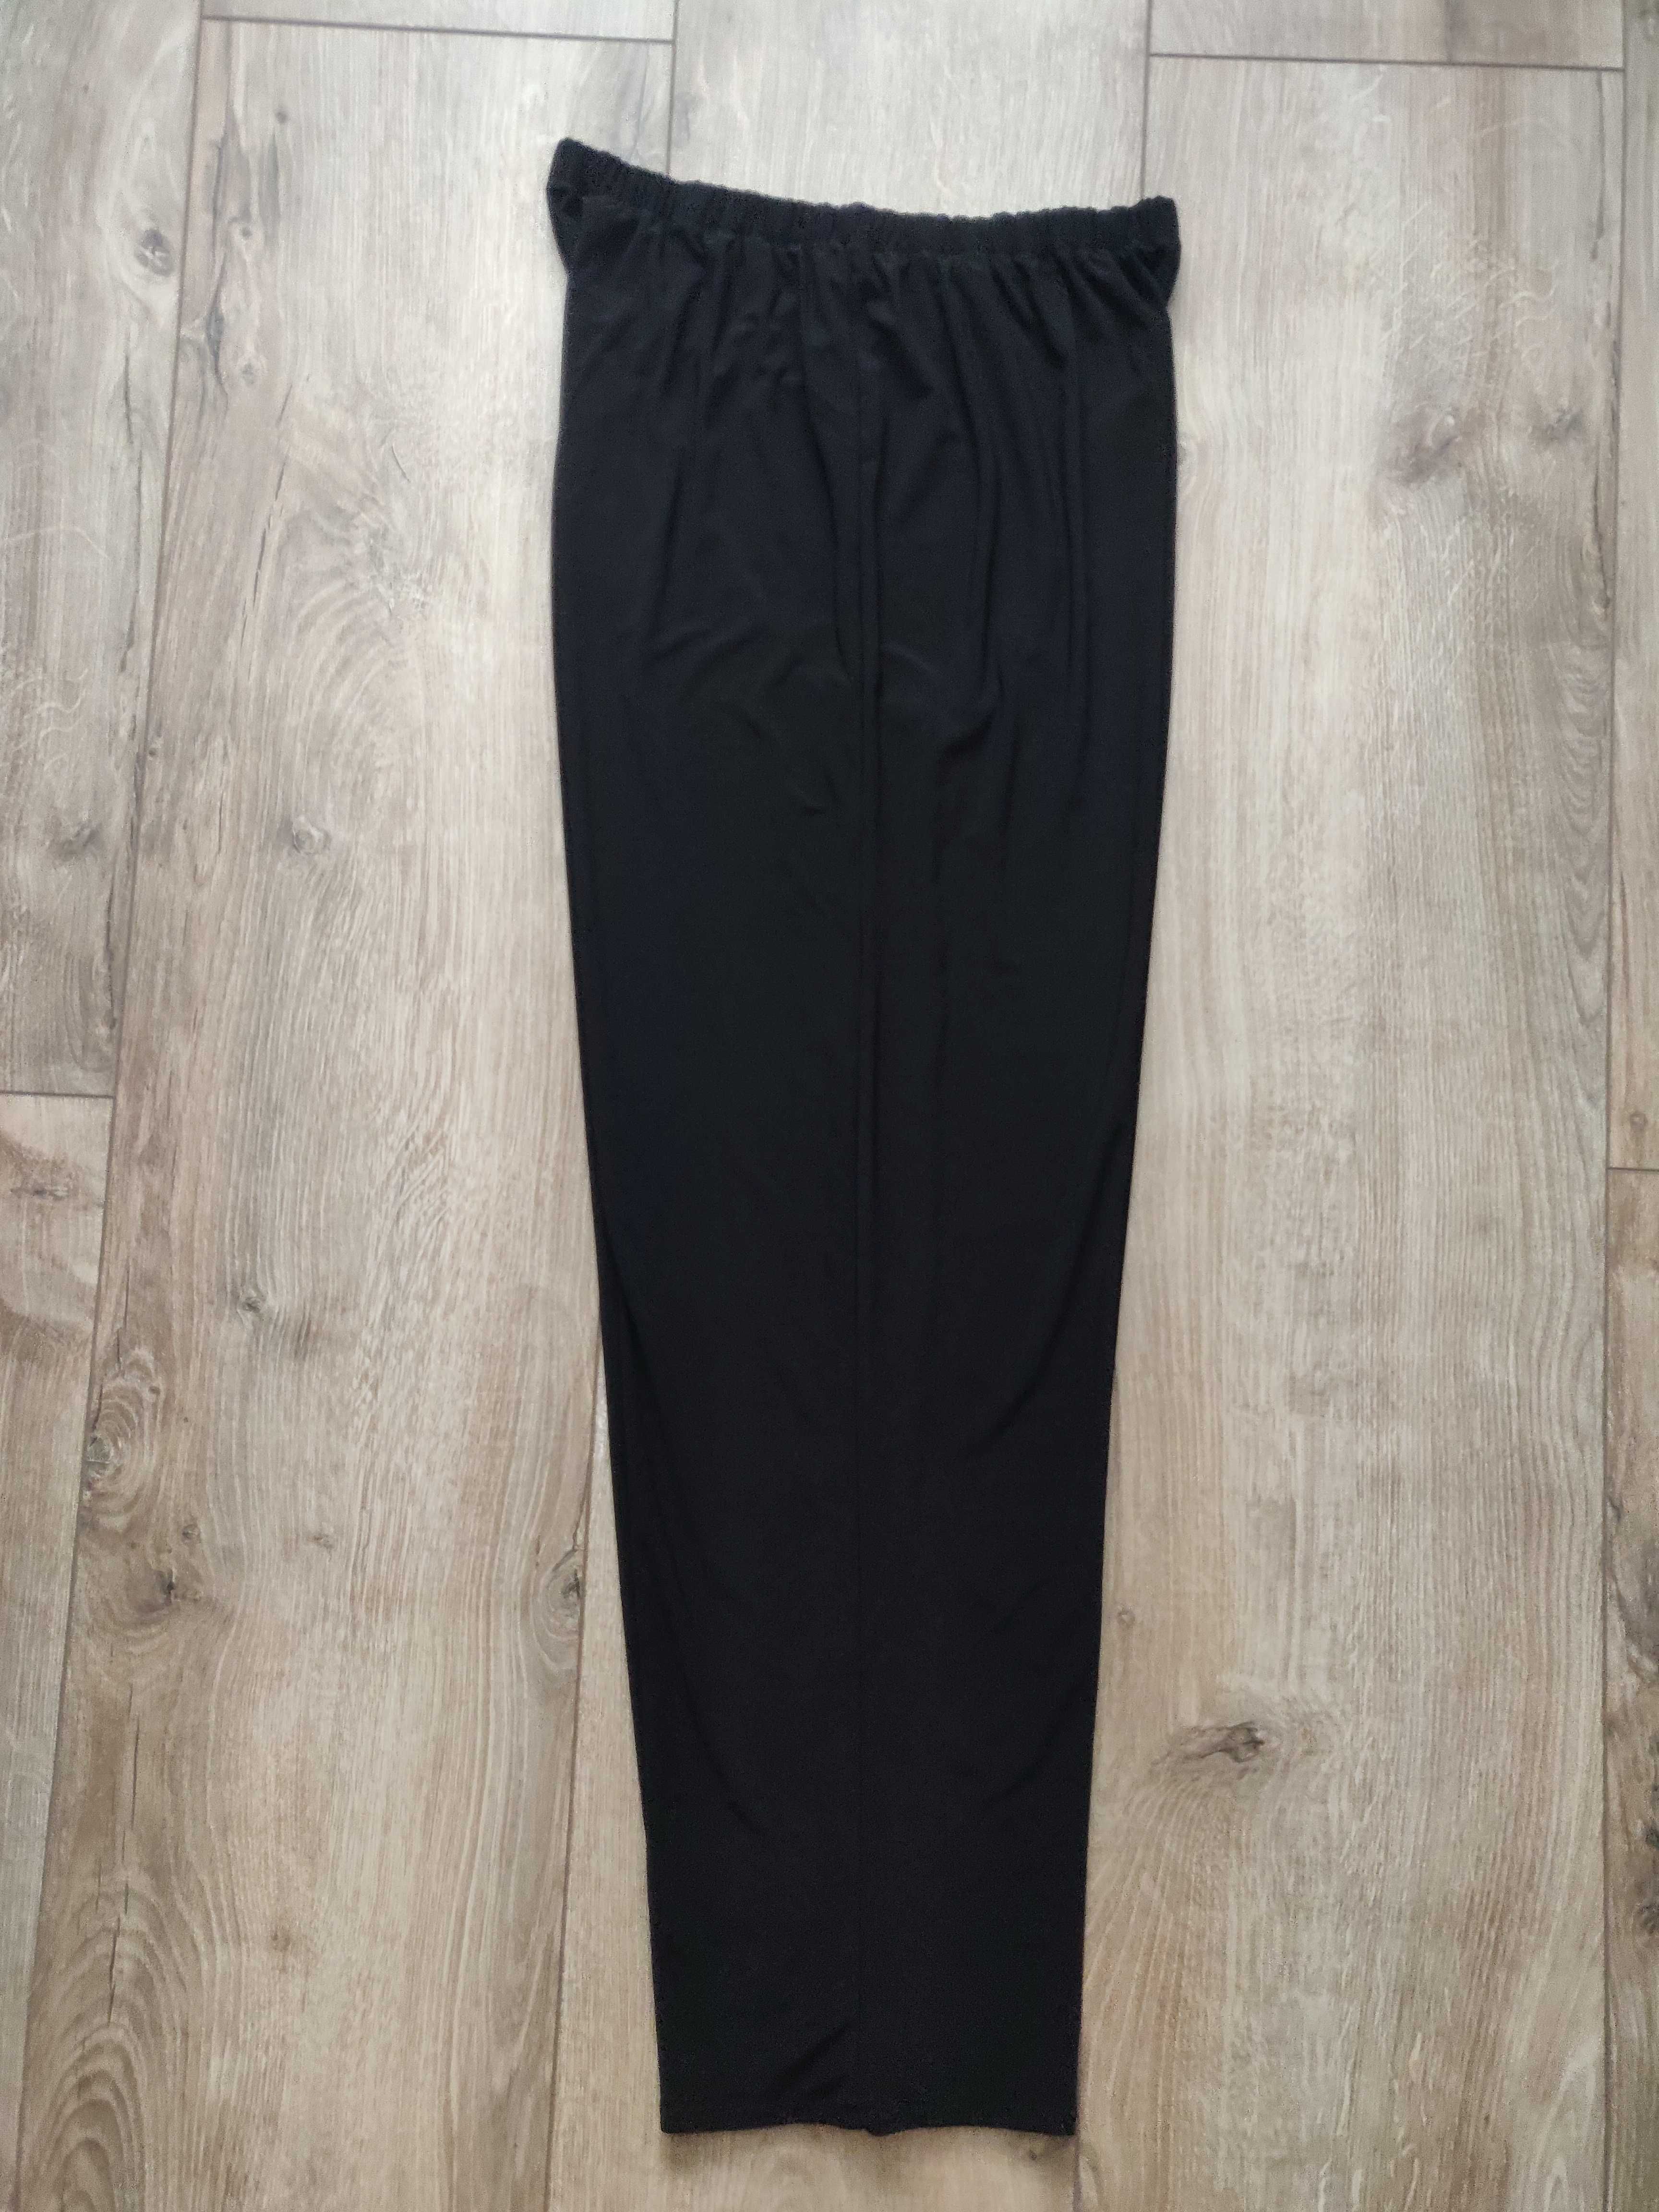 Женские брюки прямого  кроя р. 56-58 (большой  размер), черный цвет.